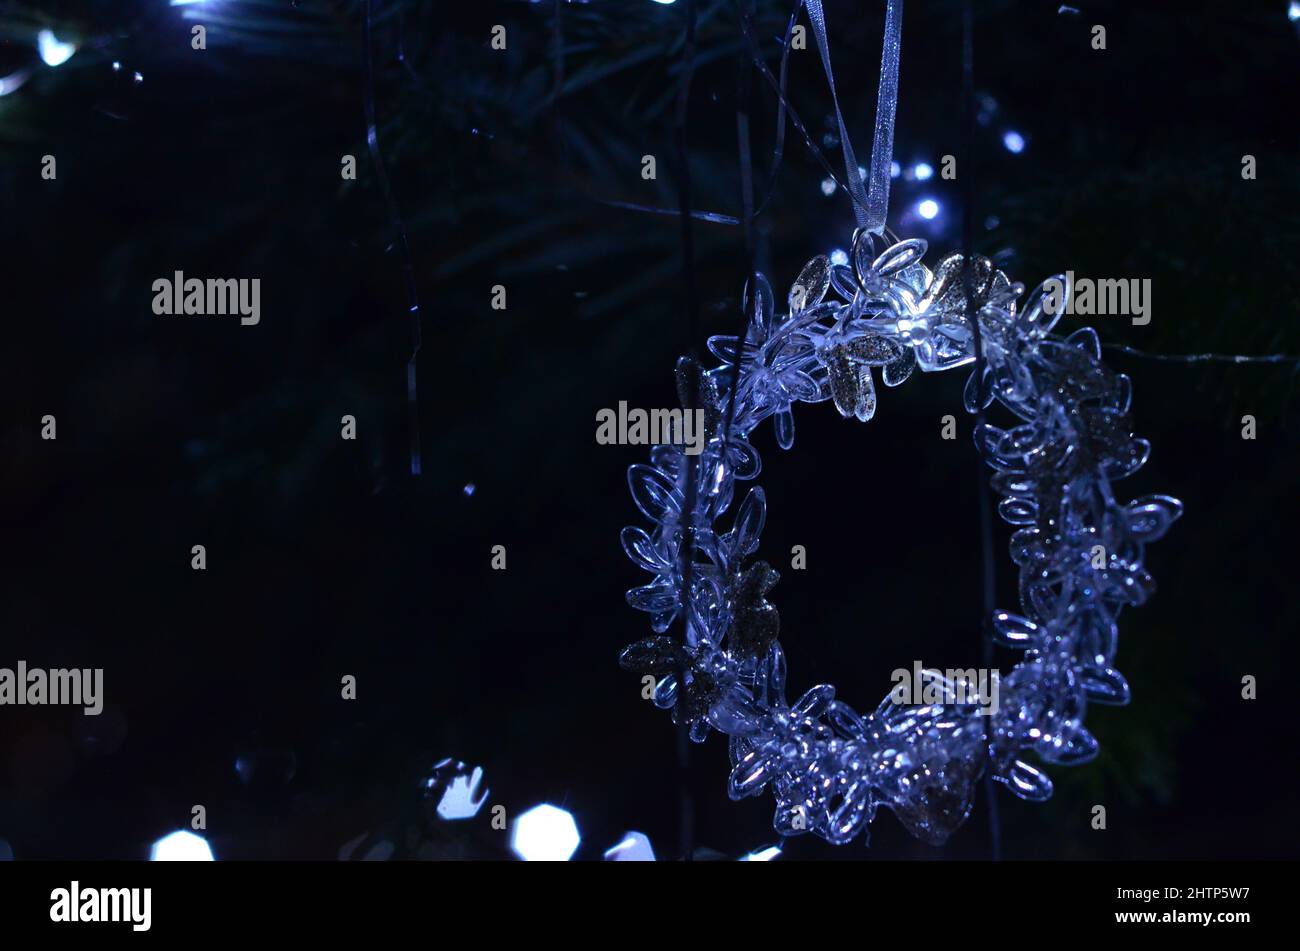 Lorbeerkranz Ornament auf dem Weihnachtsbaum aus Plastik oder Glas ; adorno de corona de navidad en el plástico o cristal del árbol de navidad Foto de stock